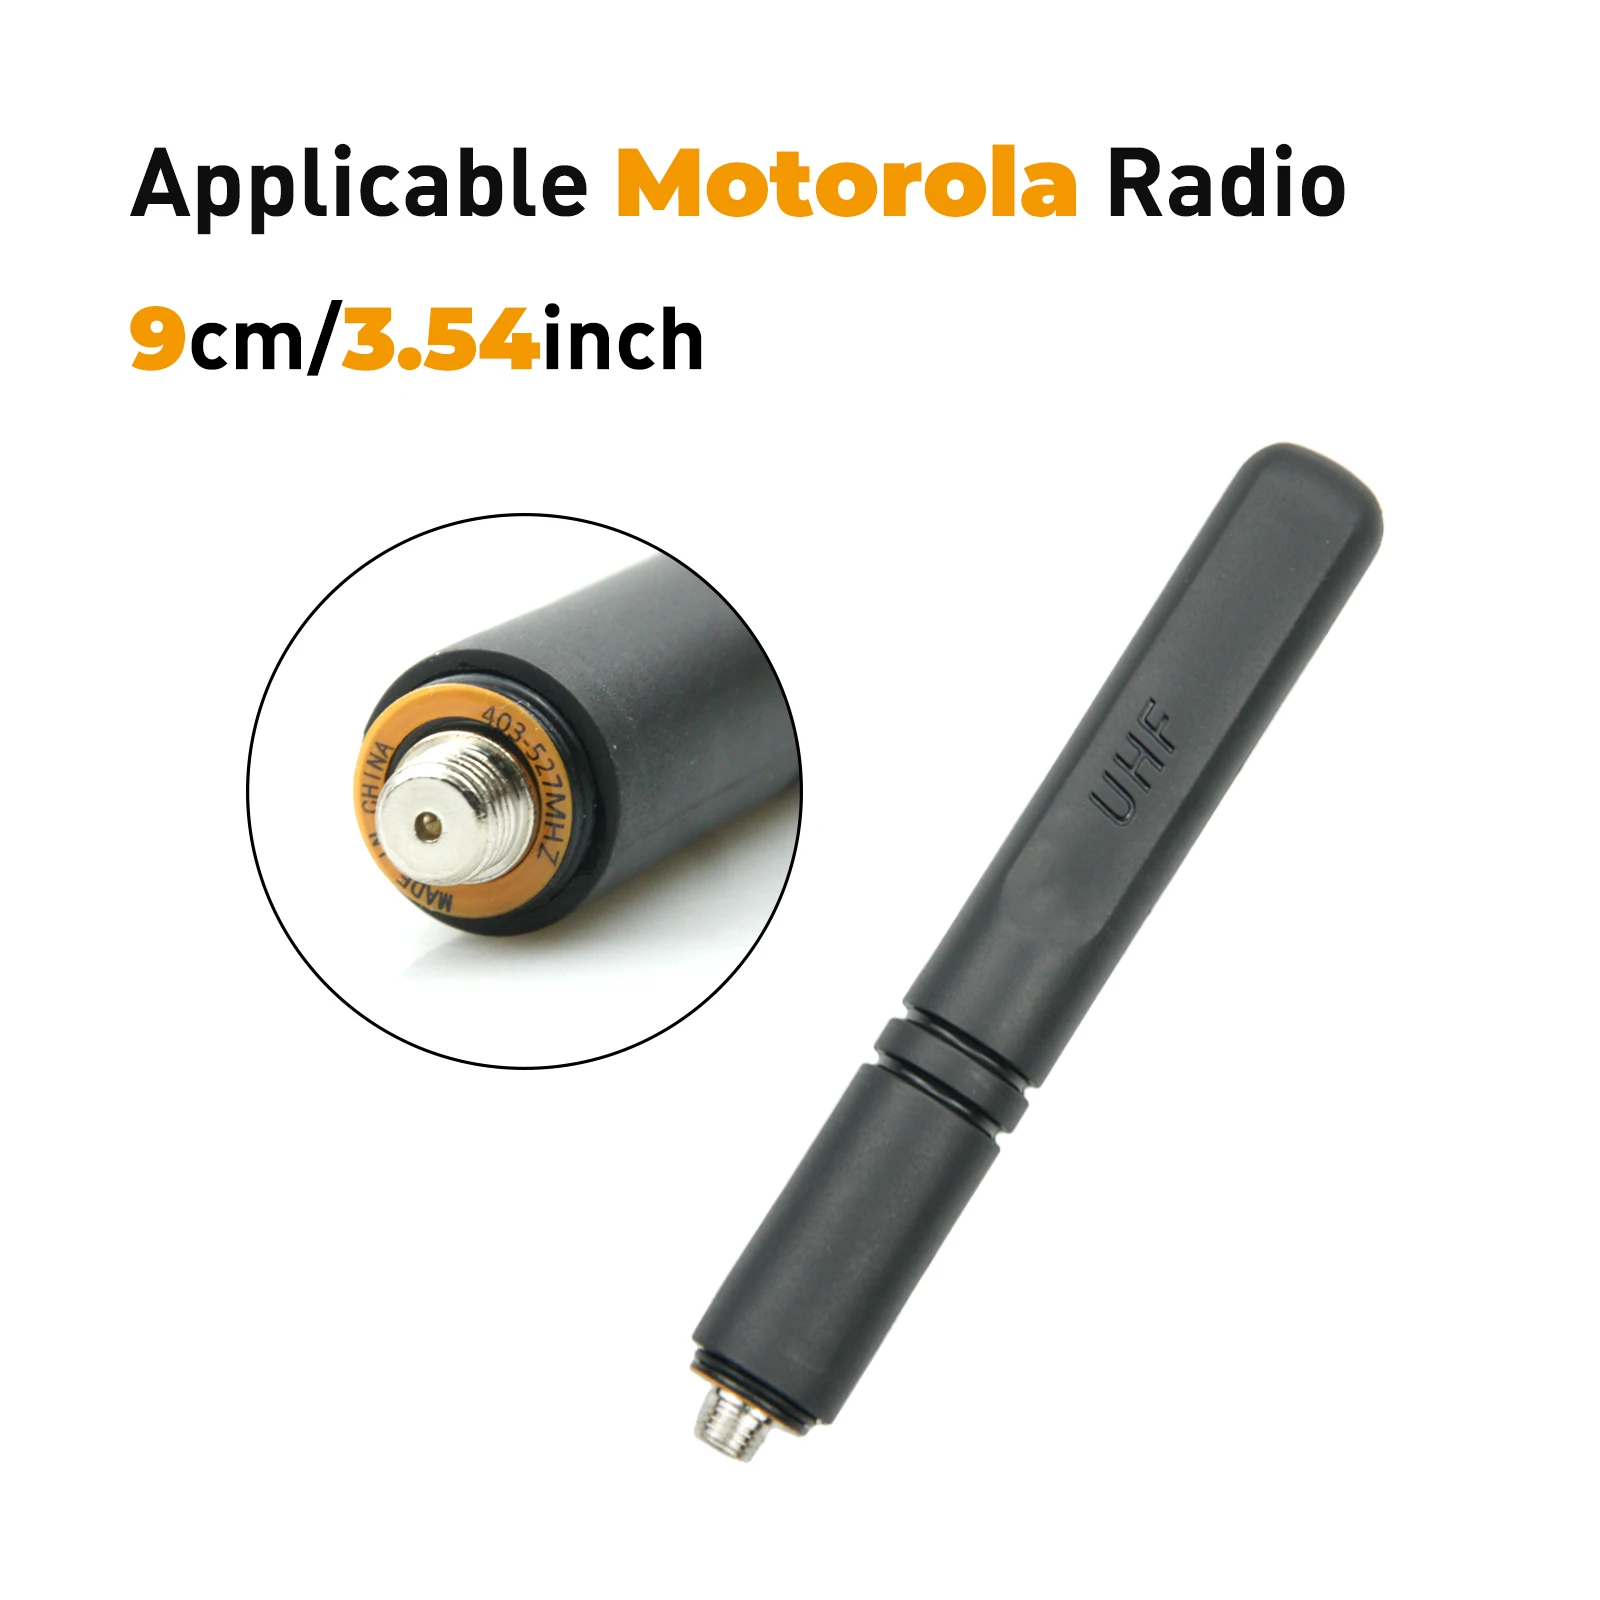 

Motorola 400mhz Short Antenna UHF 403-527Mhz Antenna for Motorola Xir P8668 P6600 P6620 P8608 Digital Walkie Talkies